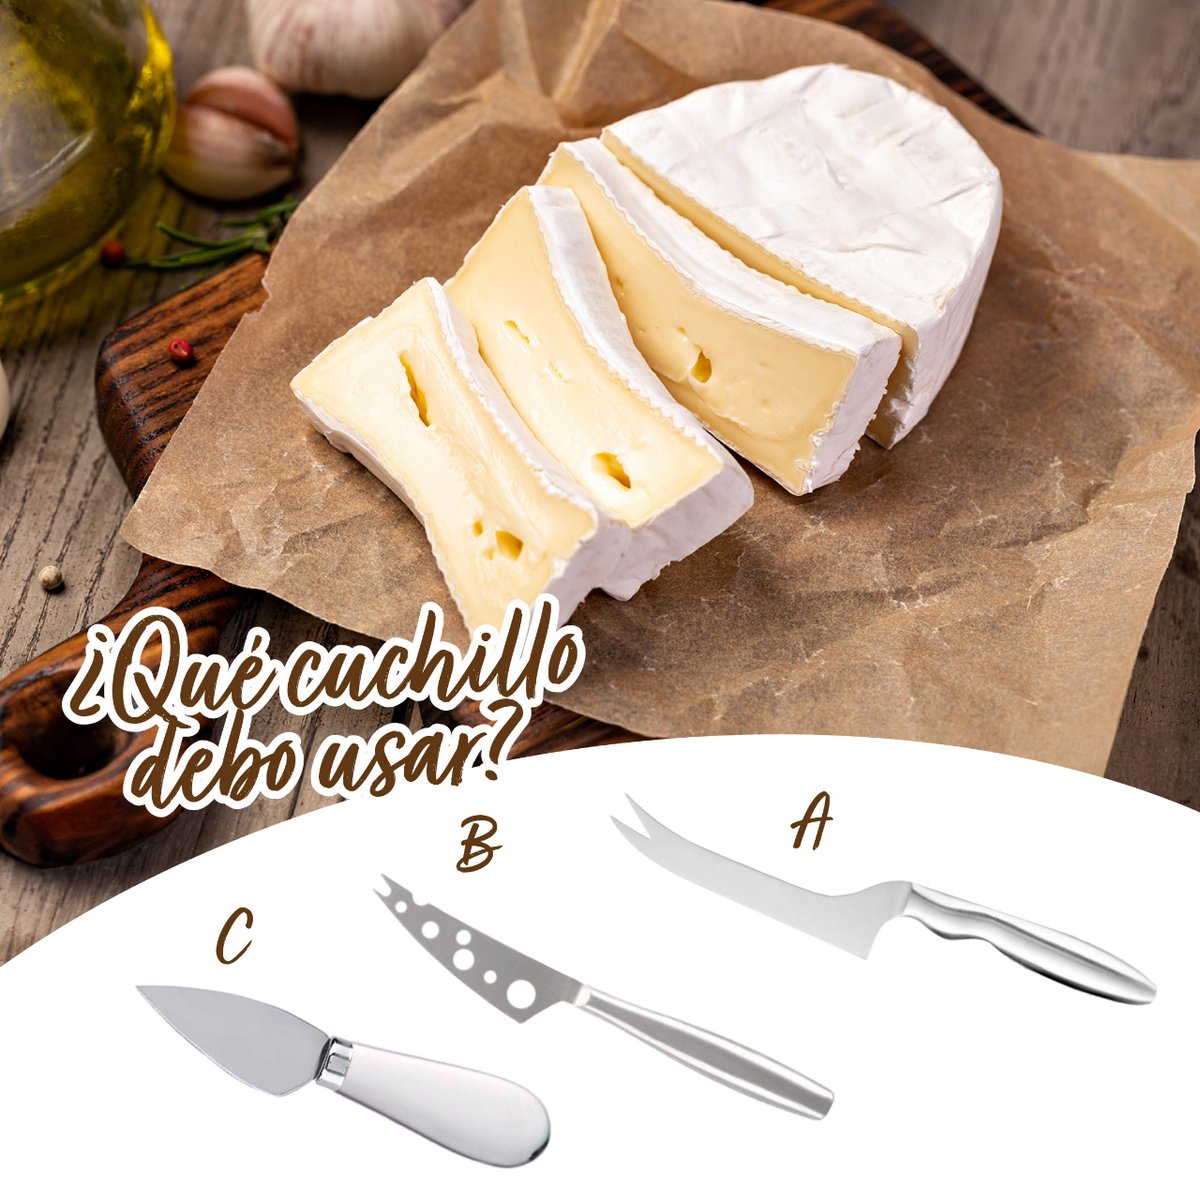 🚨 SOS 🚨¿Con qué cuchillo deberíamos cortar el queso tierno? 😟😰

#juego #adivinanza #locosporelqueso #tartadequeso #quesos #jamonyqueso #quesofresco #quesodeoveja